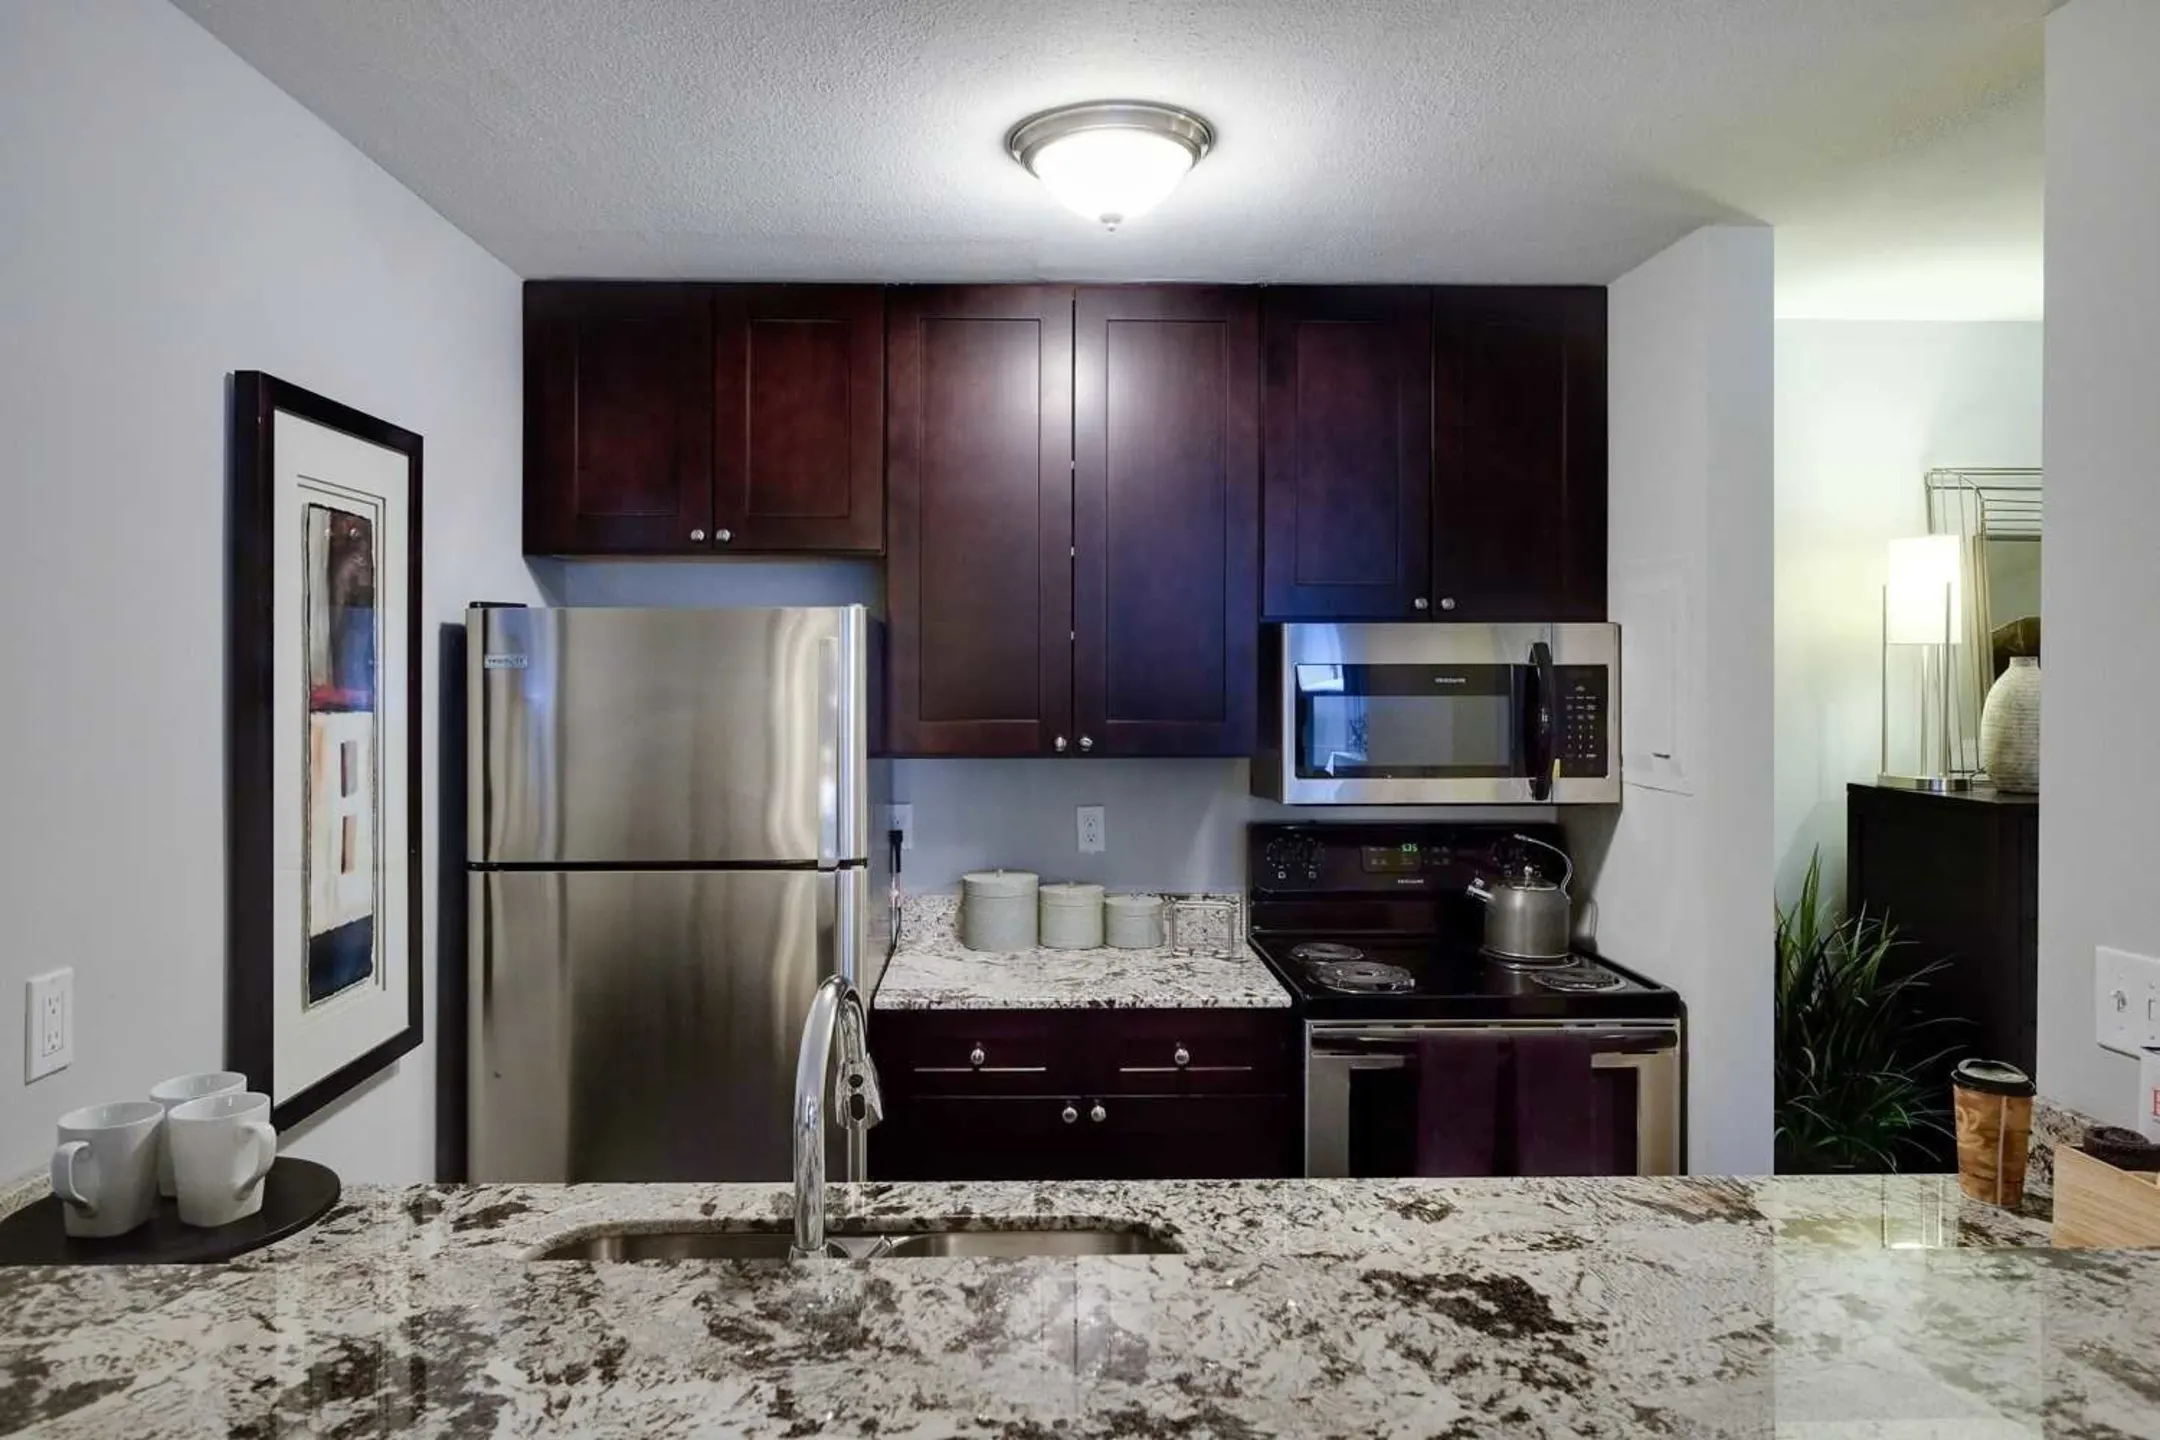 Kitchen - Merriam Park Apartments - Saint Paul, MN